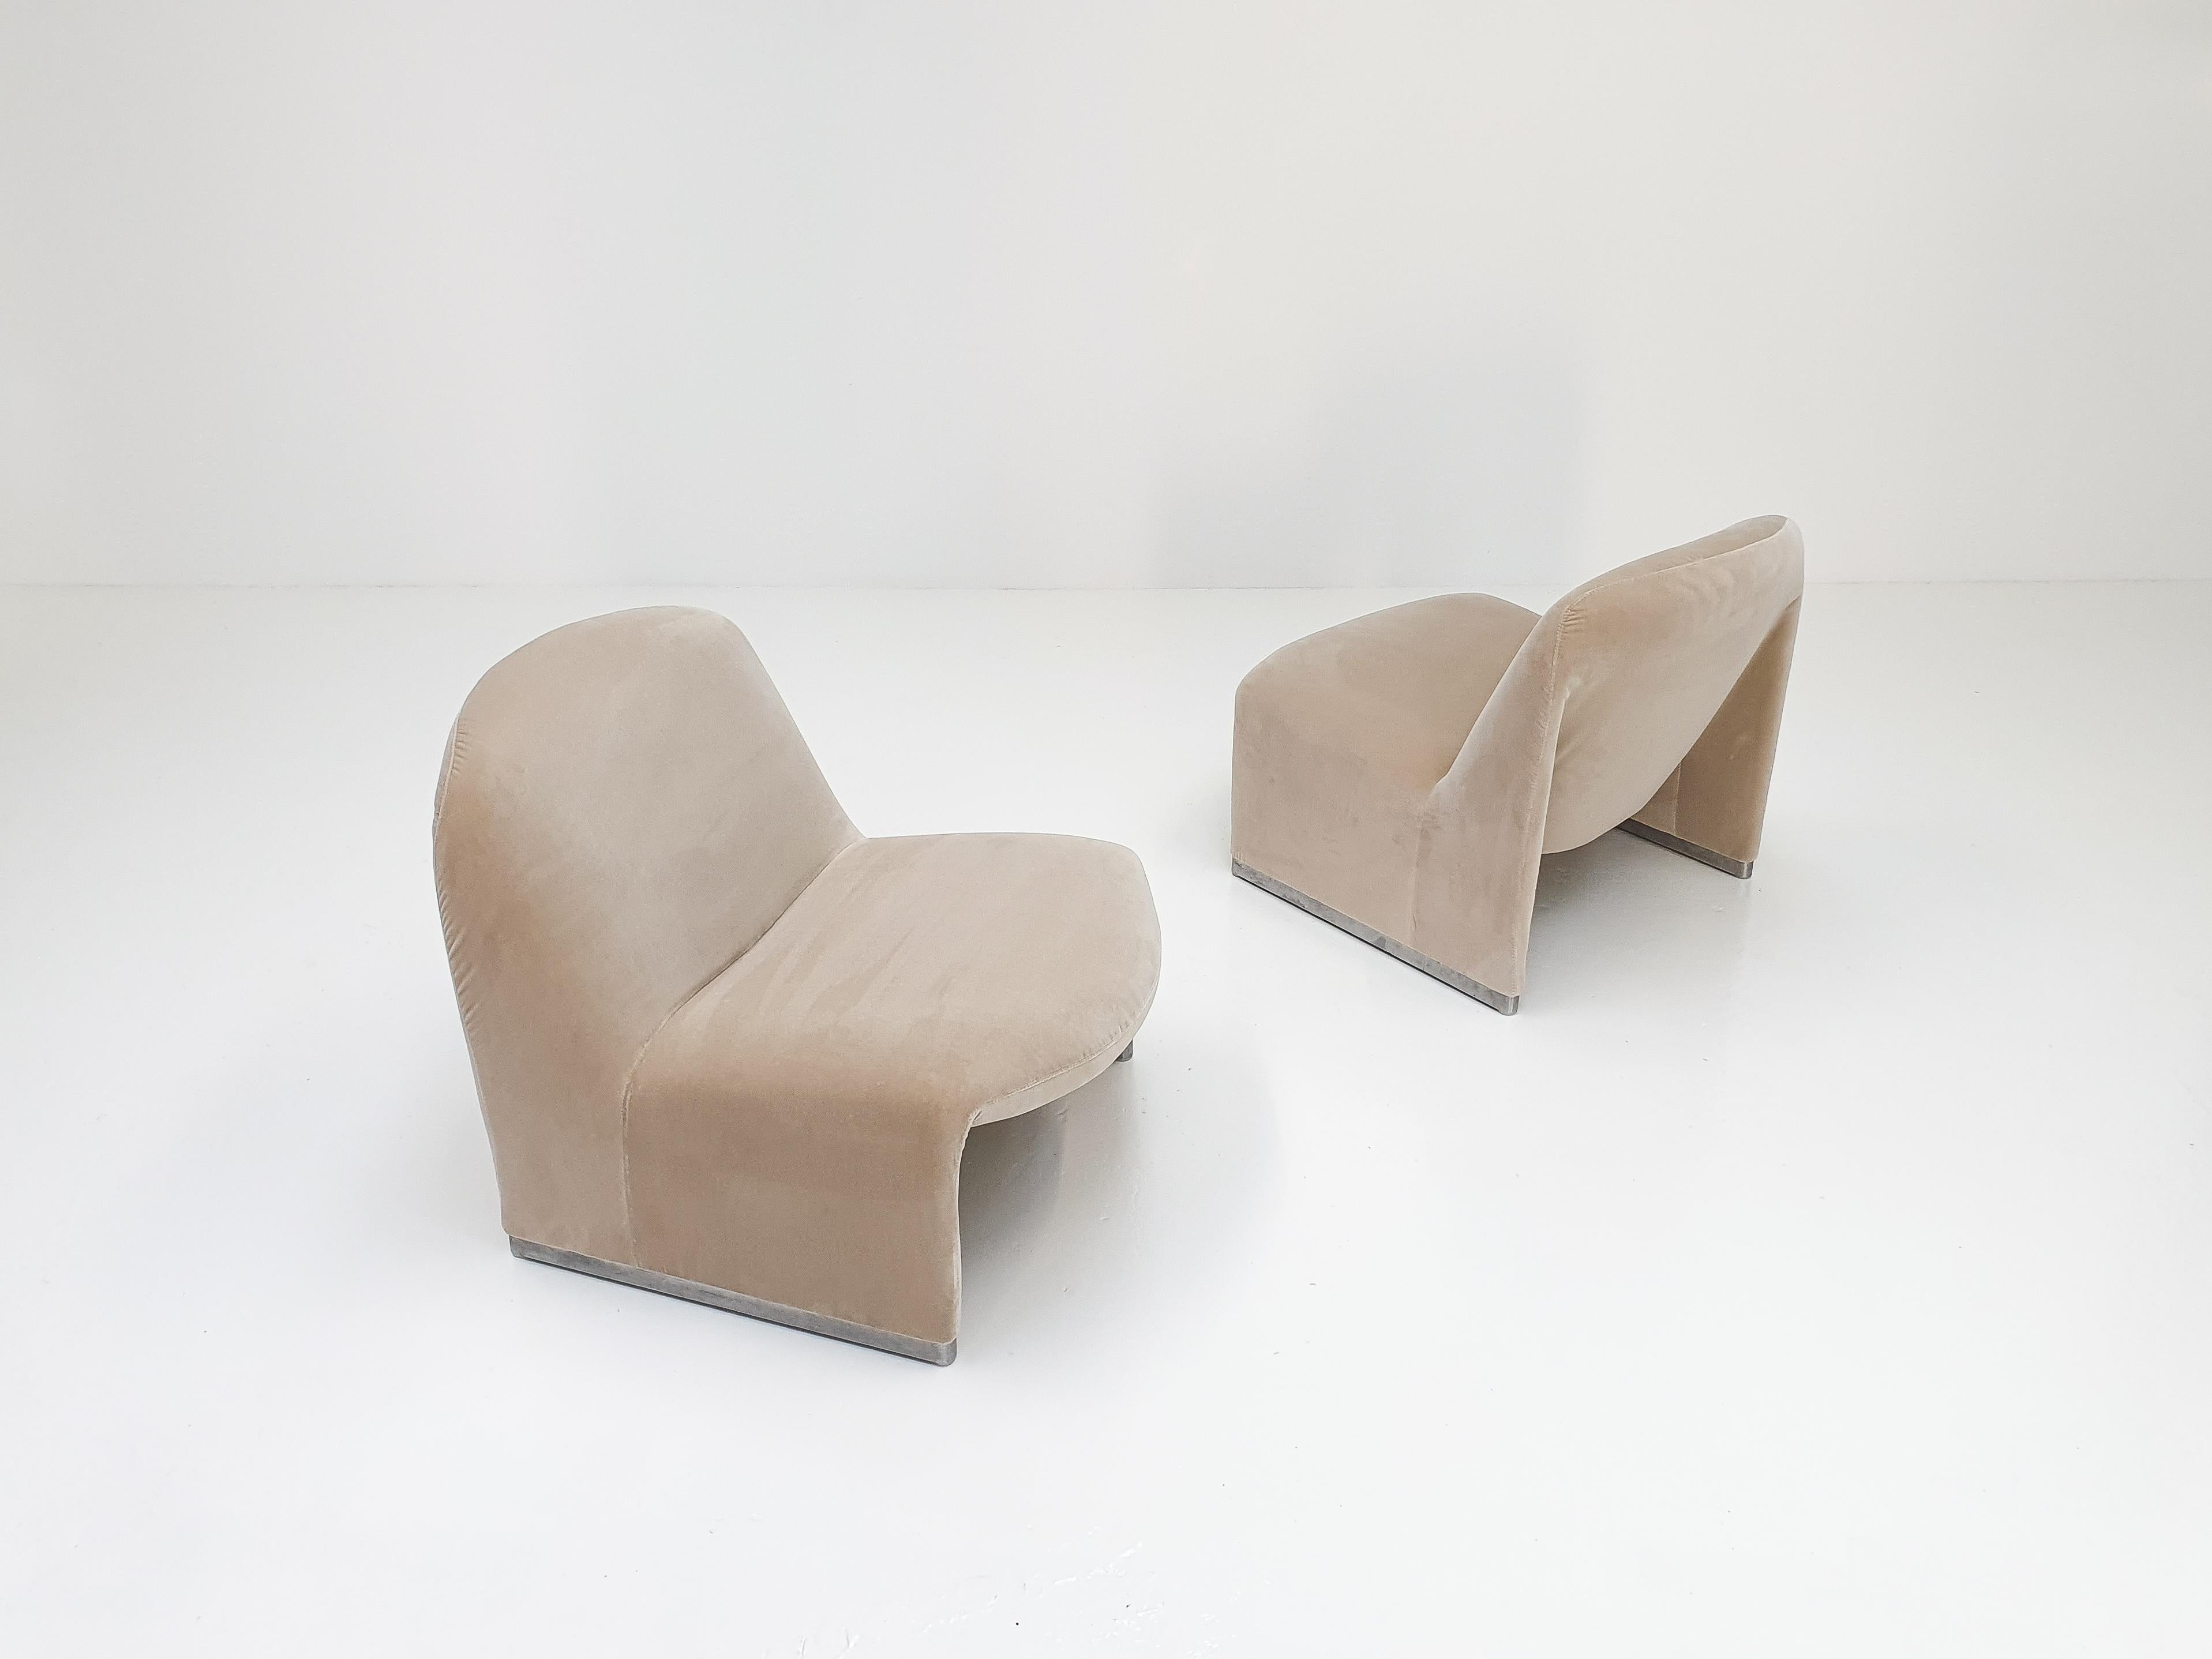 20th Century Pair of Giancarlo Piretti “Alky” Chairs in New Velvet, Artifort, 1970s